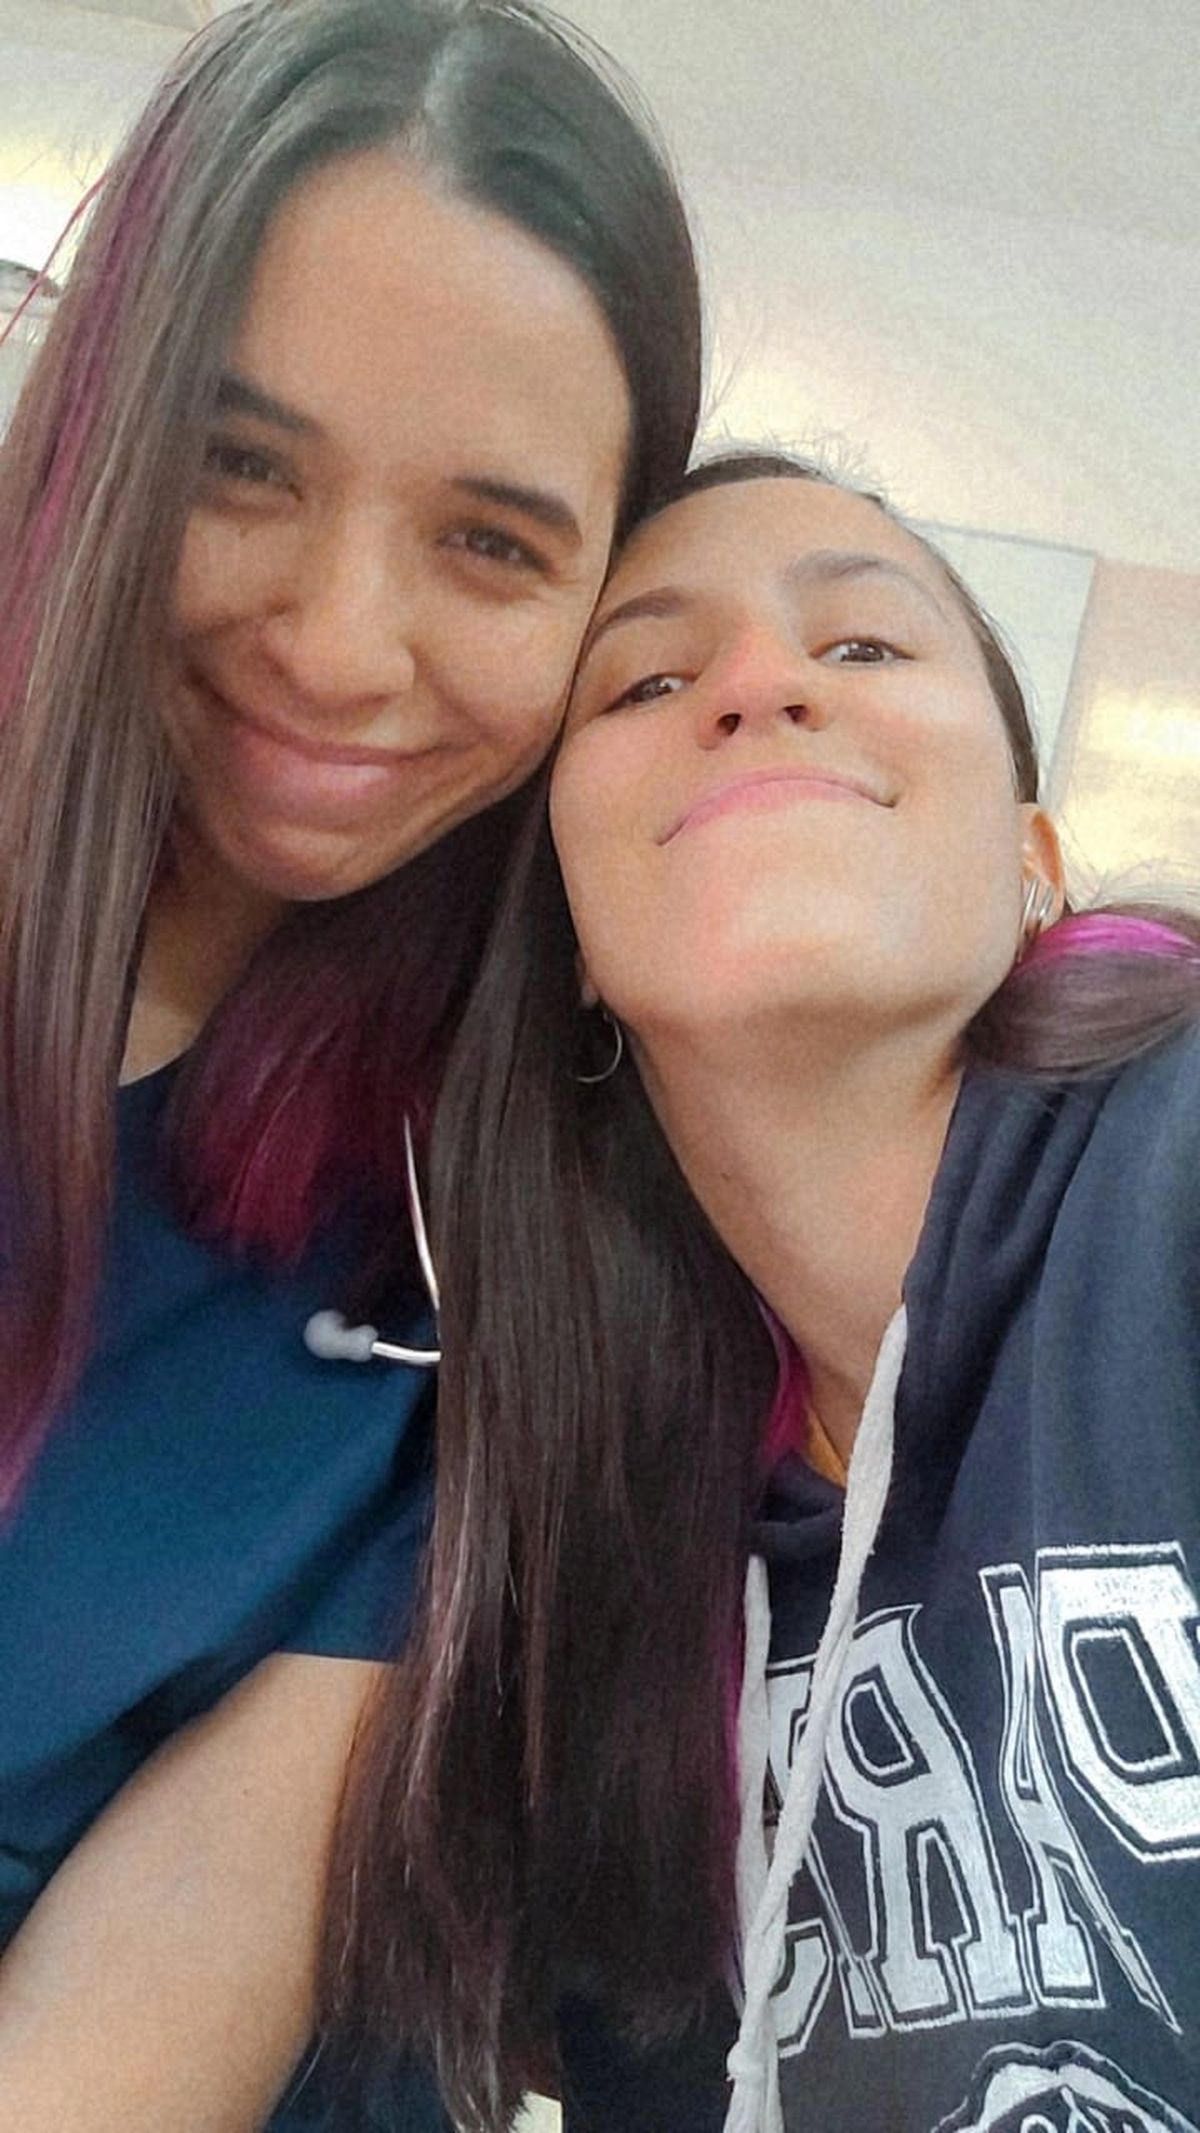 Ariana Besada, quien tuvo el divertido cruce, junto a su compañera Camila Castro en el Hospital de Ezeiza.